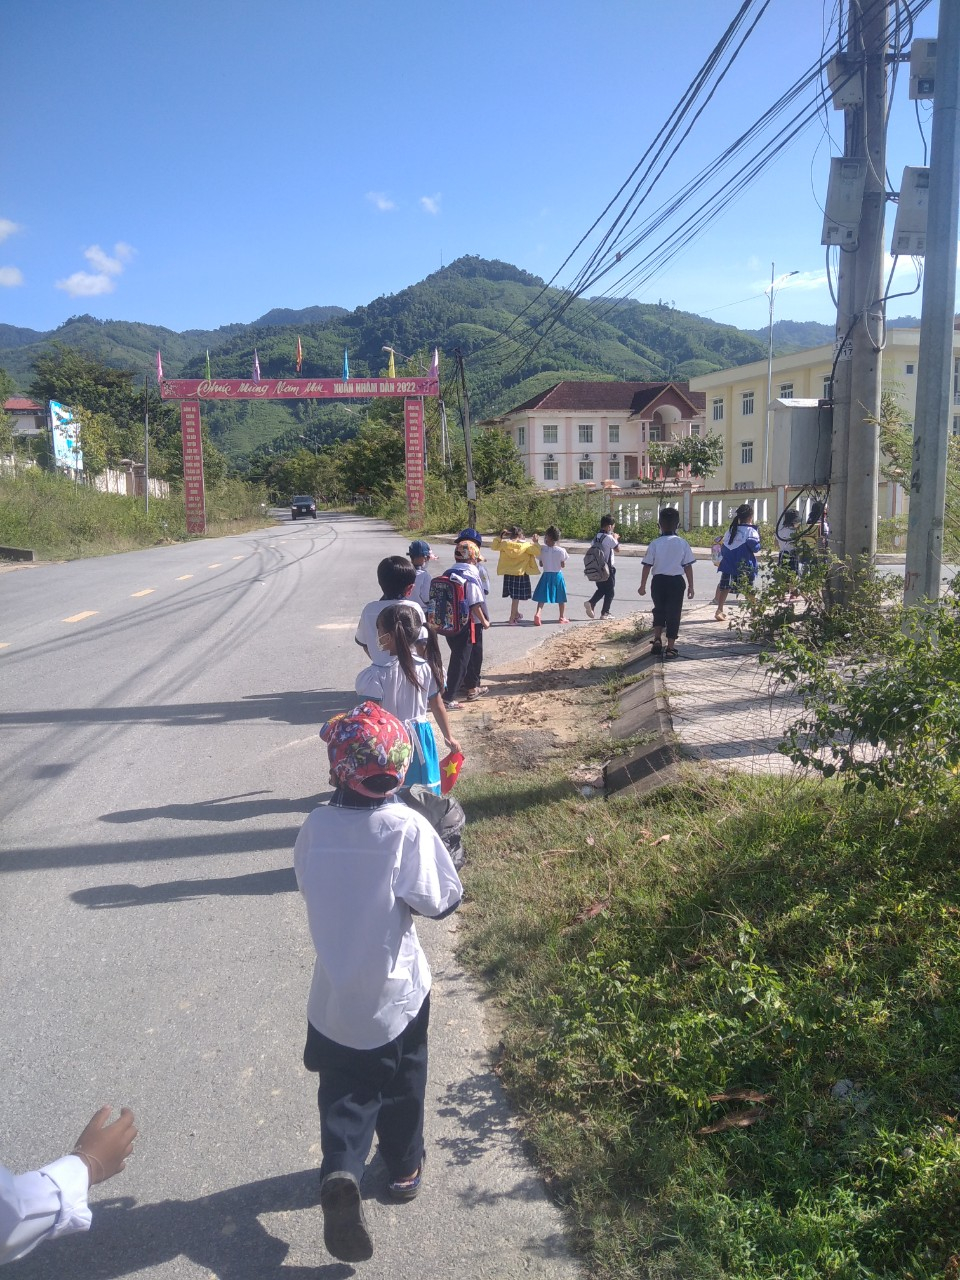 Thay vì được đưa đón, học sinh miền núi tự đi bộ đến trường khai giảng